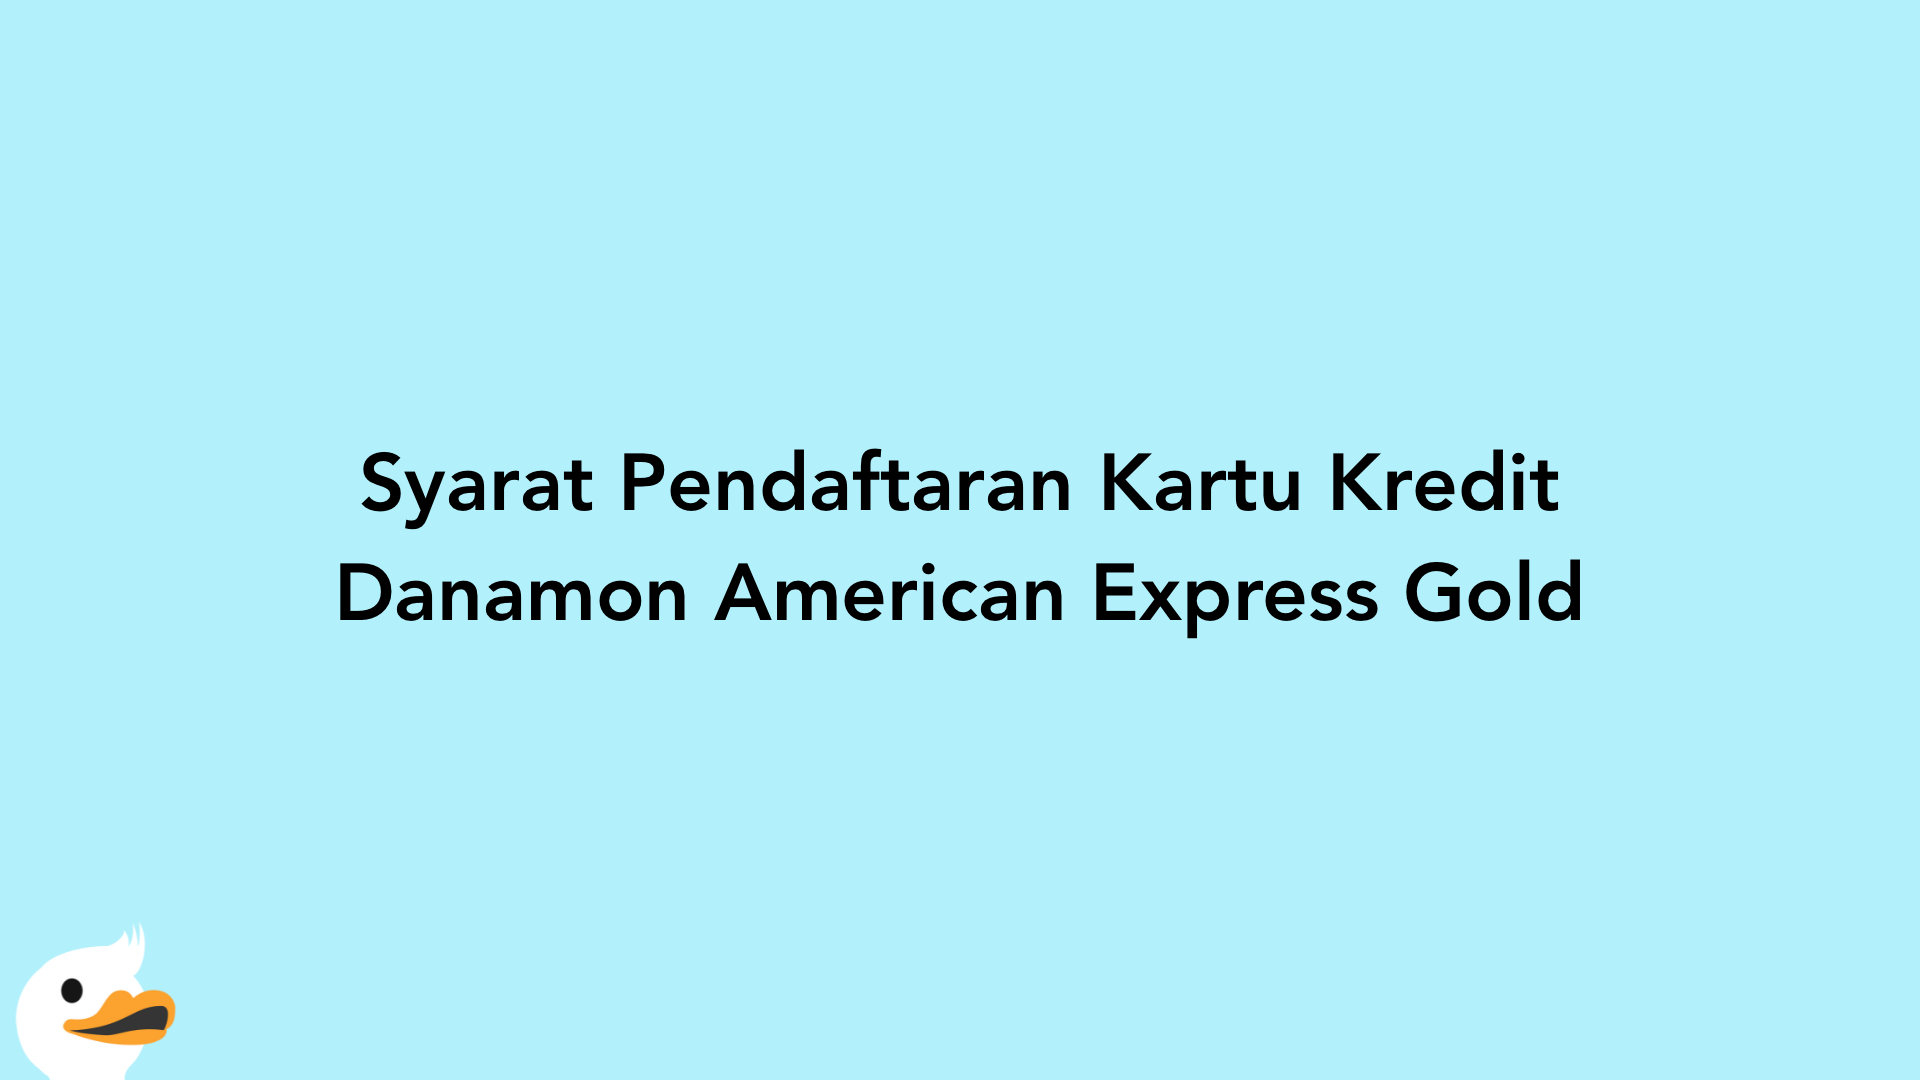 Syarat Pendaftaran Kartu Kredit Danamon American Express Gold